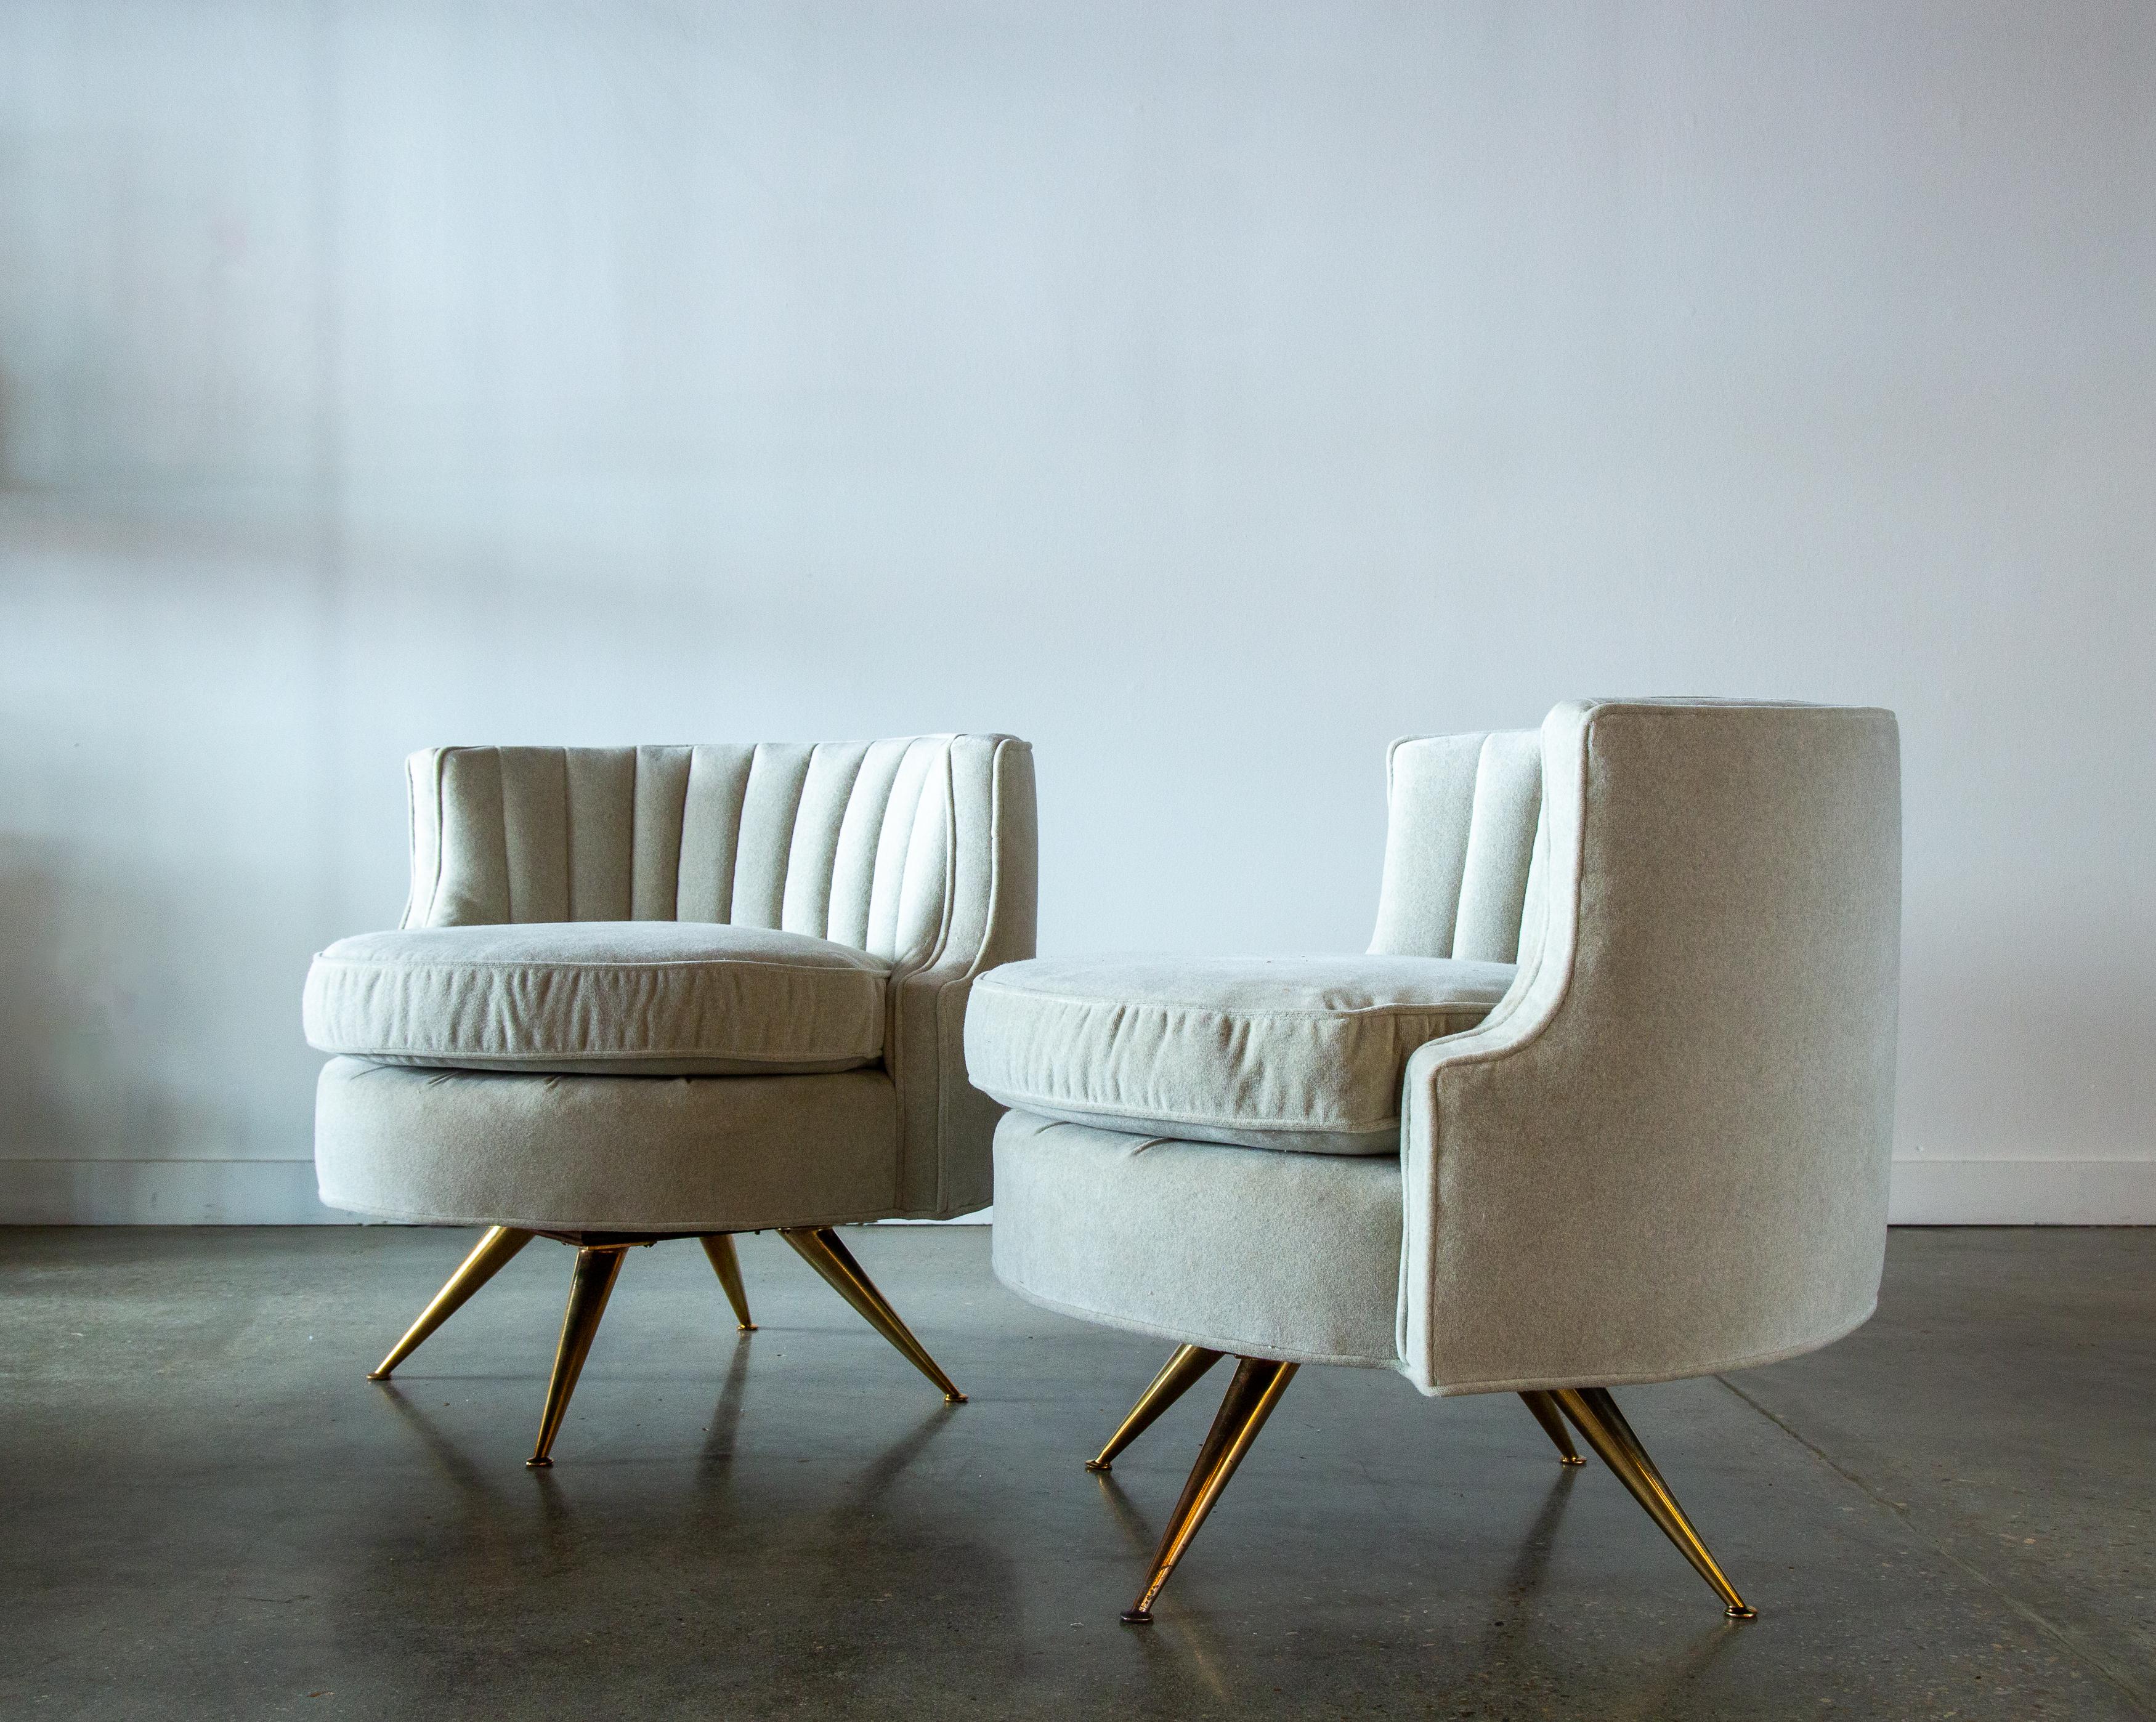 Paire de fauteuils pivotants à dossier en tonneau des années 1950, conçus par Henry P. Glass pour JG Furniture. Ces chaises sont dotées d'un magnifique dossier en forme de tonneau, accentué par des touffes de tissu. Le dos régulier descend jusqu'à